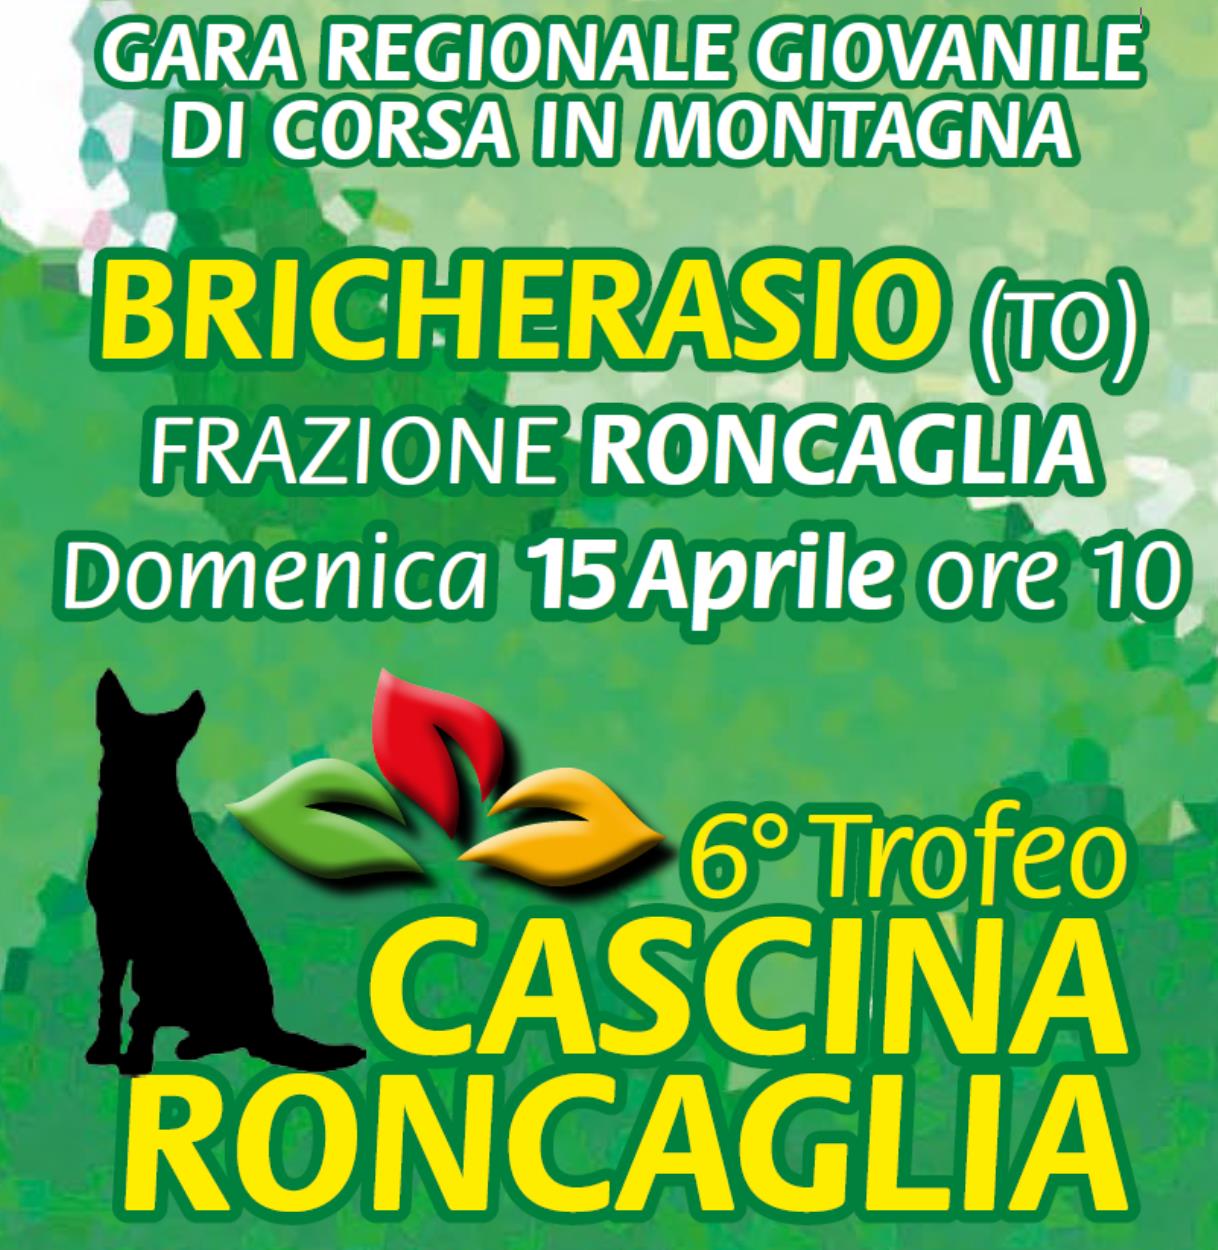 Trofeo Cascina Roncaglia